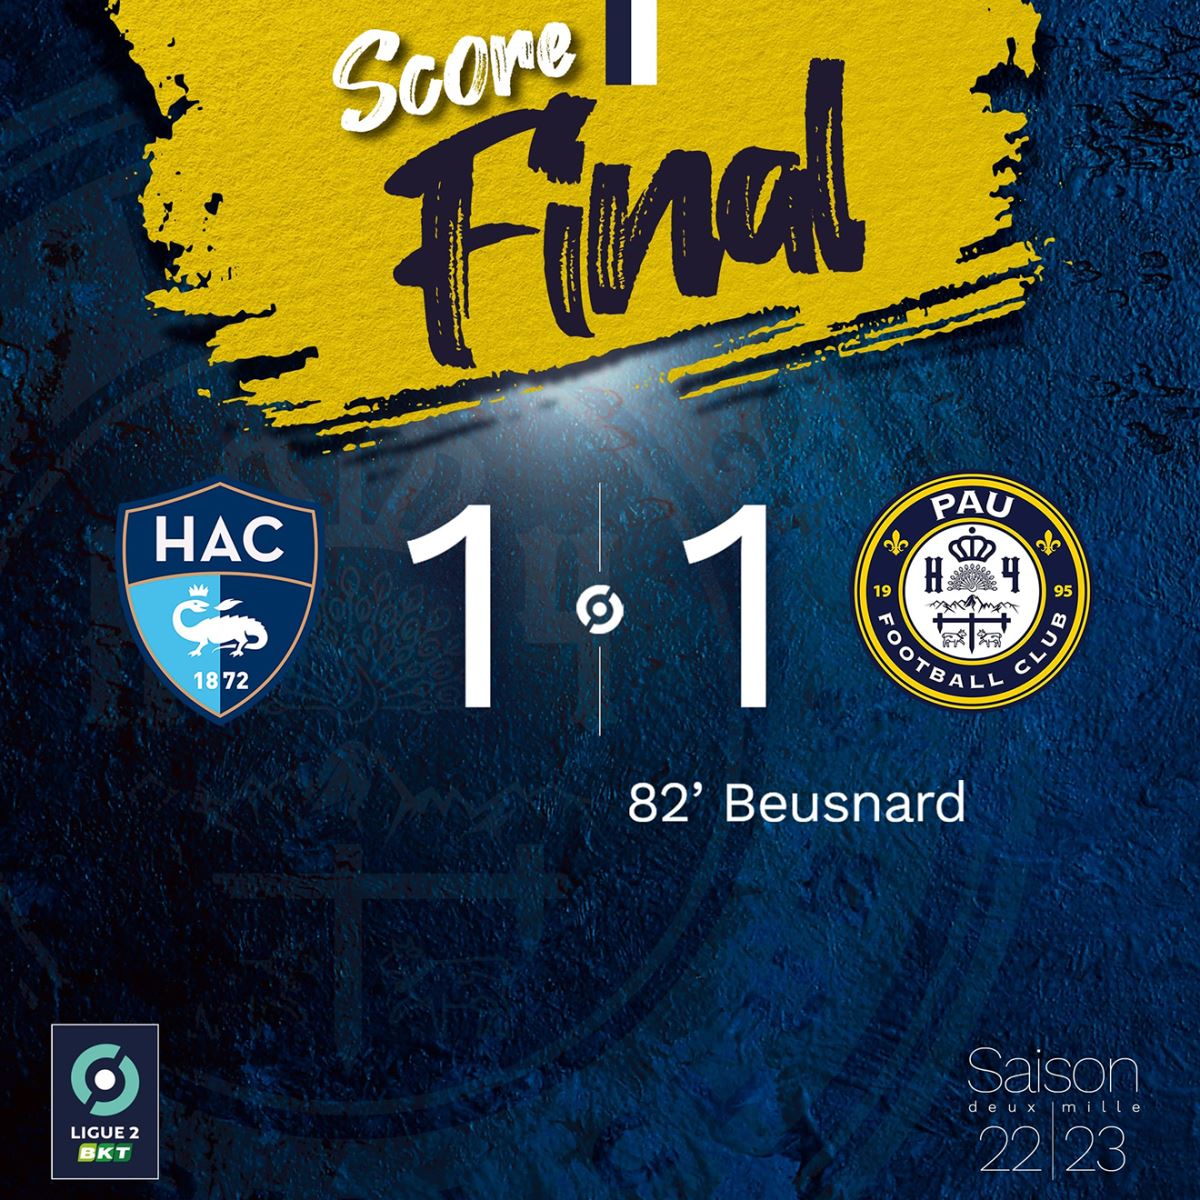 Kết quả bóng đá, Le Havre vs Pau FC, Quang Hải đã chơi thế nào trước Le Havre, kết quả Le Havre vs Pau FC, ket qua bong da, kết quả Pau FC, kết quả Quang Hải, Quang Hải